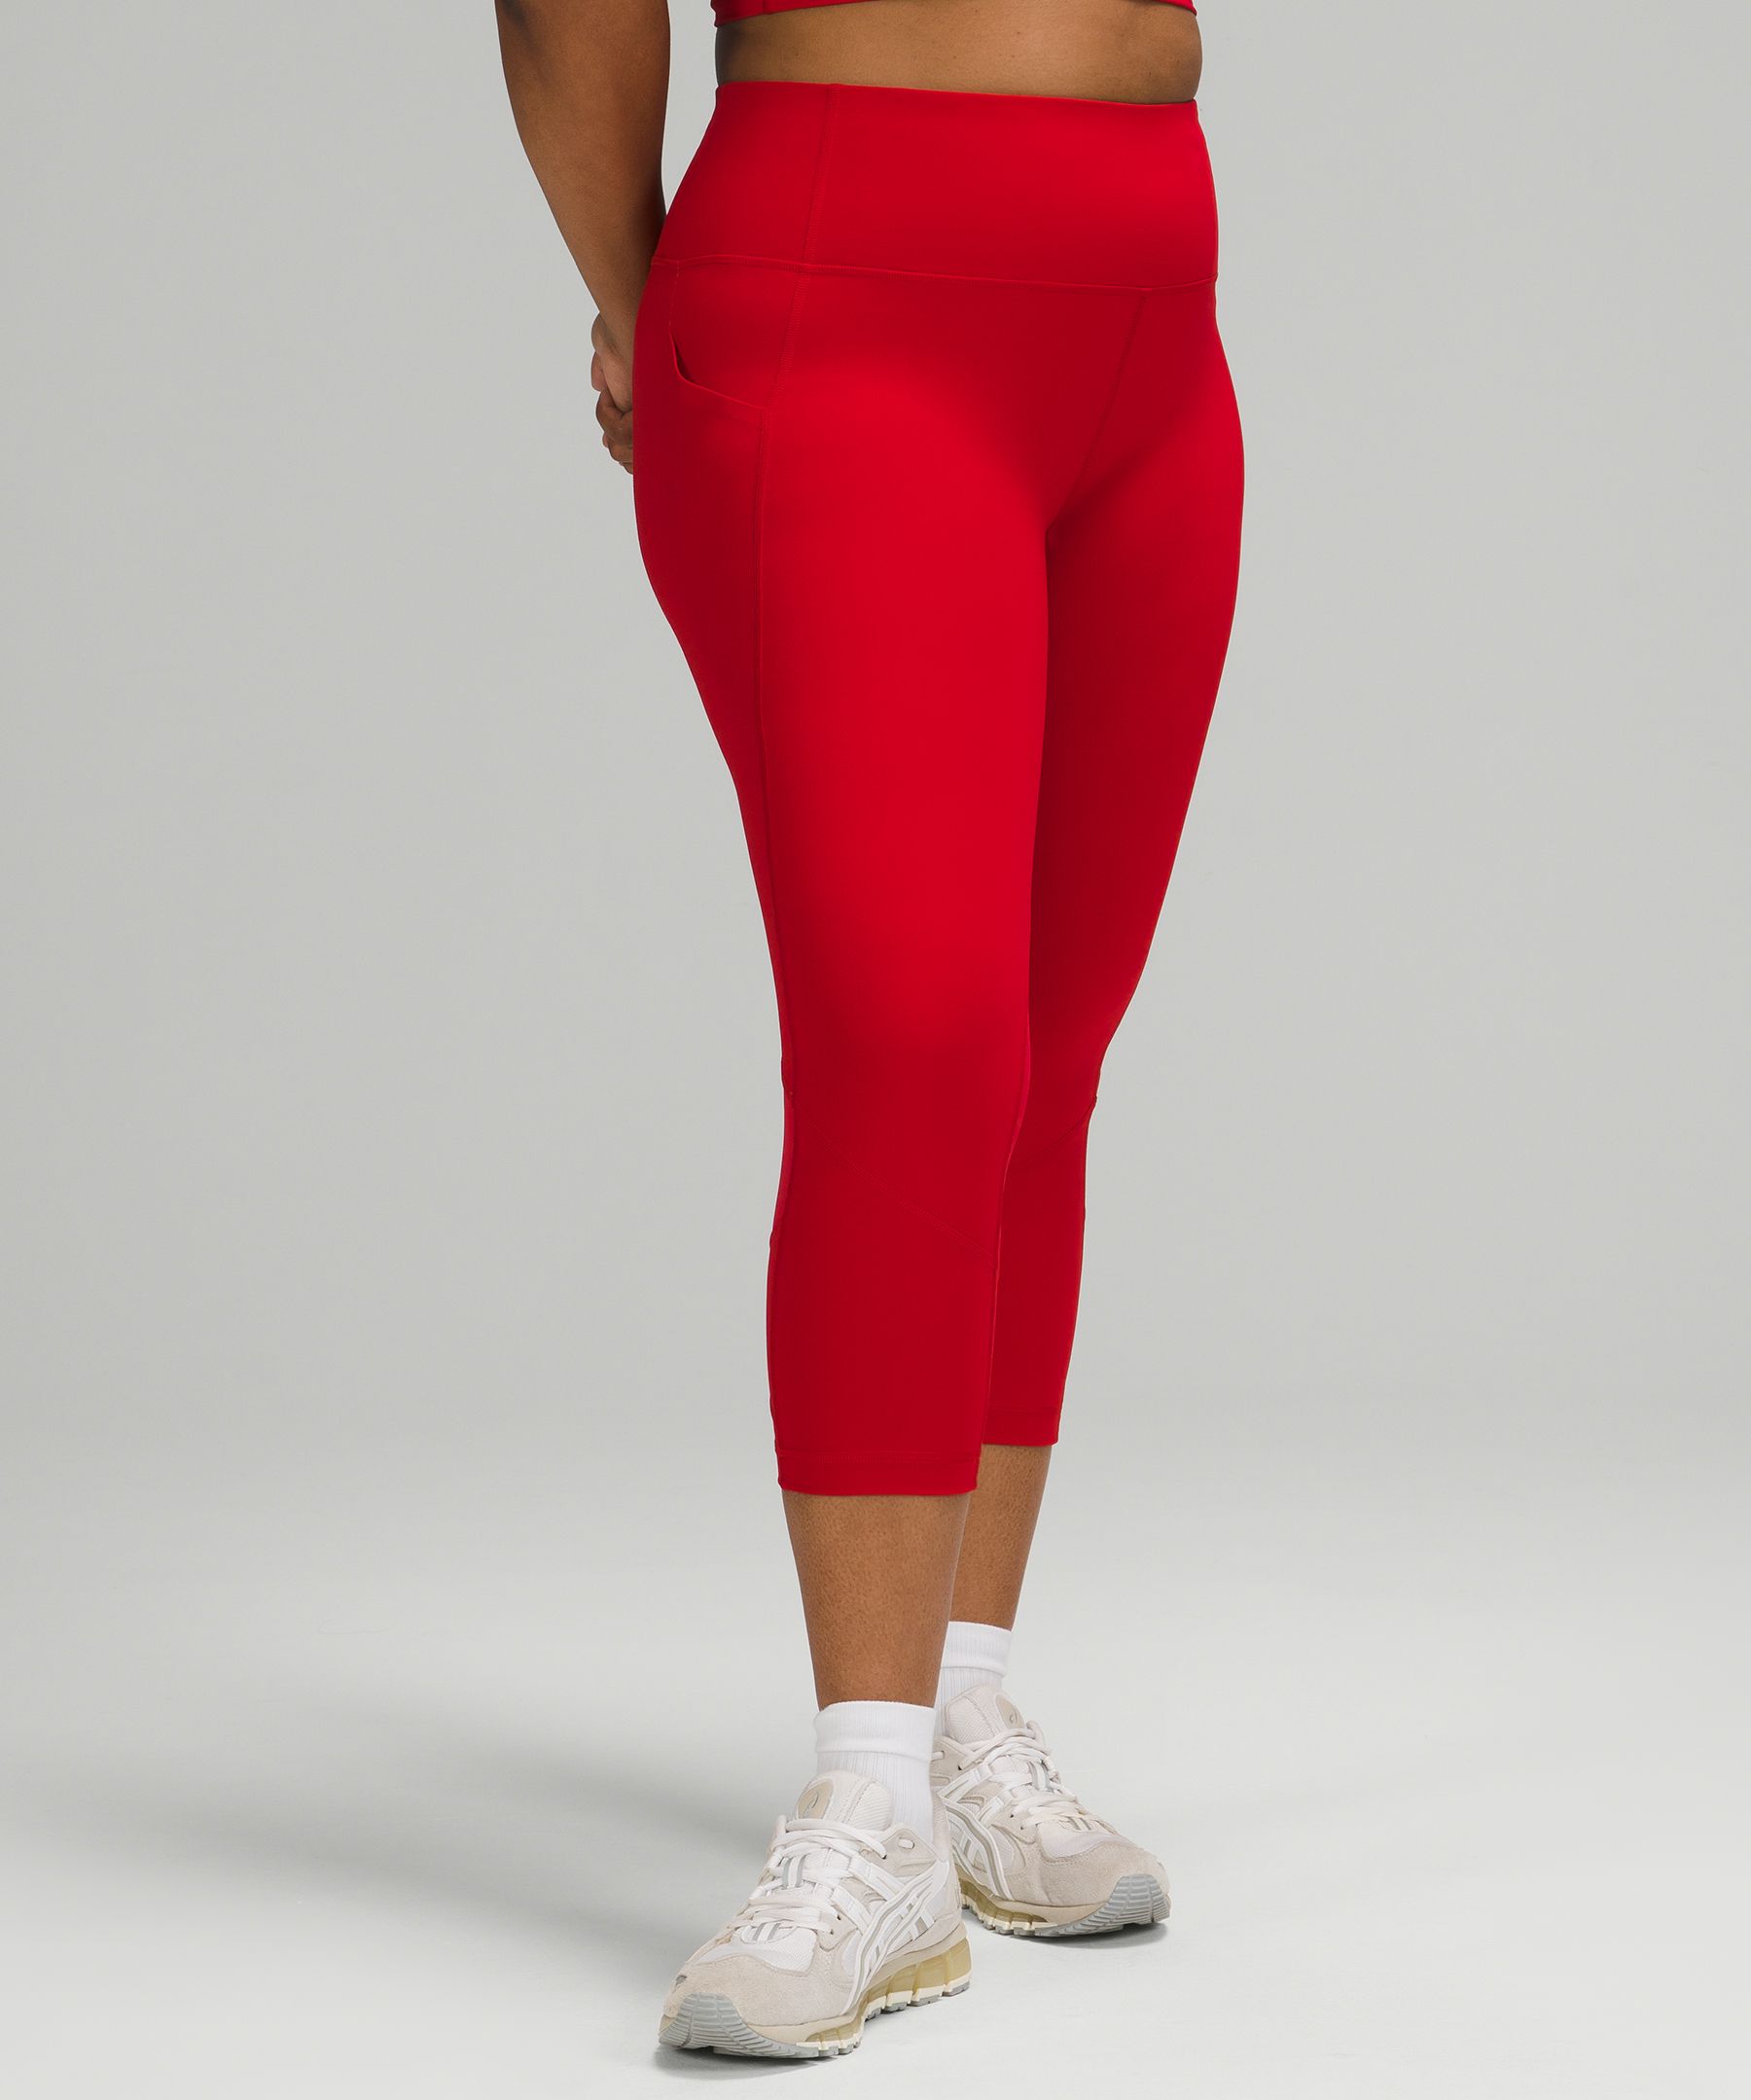 red lululemon leggings